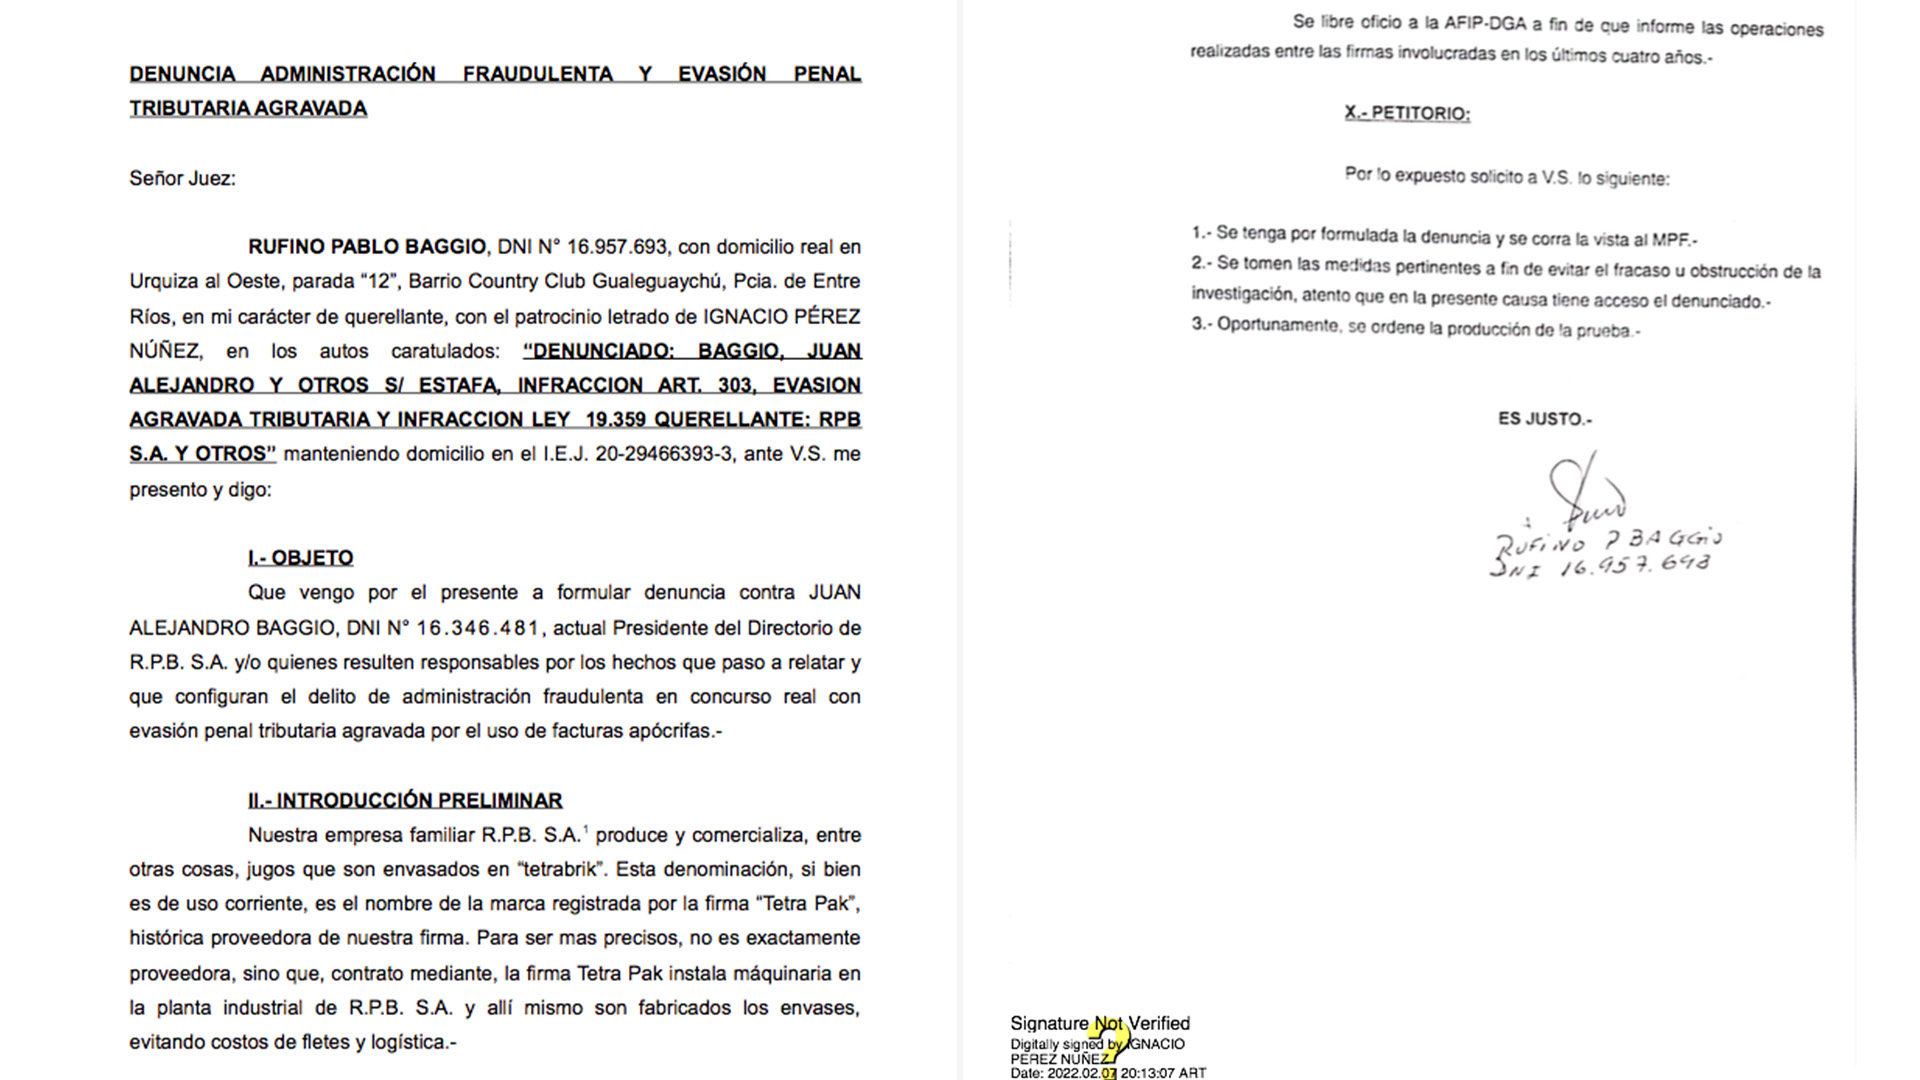 Parte de la nueva denuncia de "Pino" Baggio contra su hermano Alejandro por presunto sobreprecios en la importación de envases y desvío de fondos al exterior